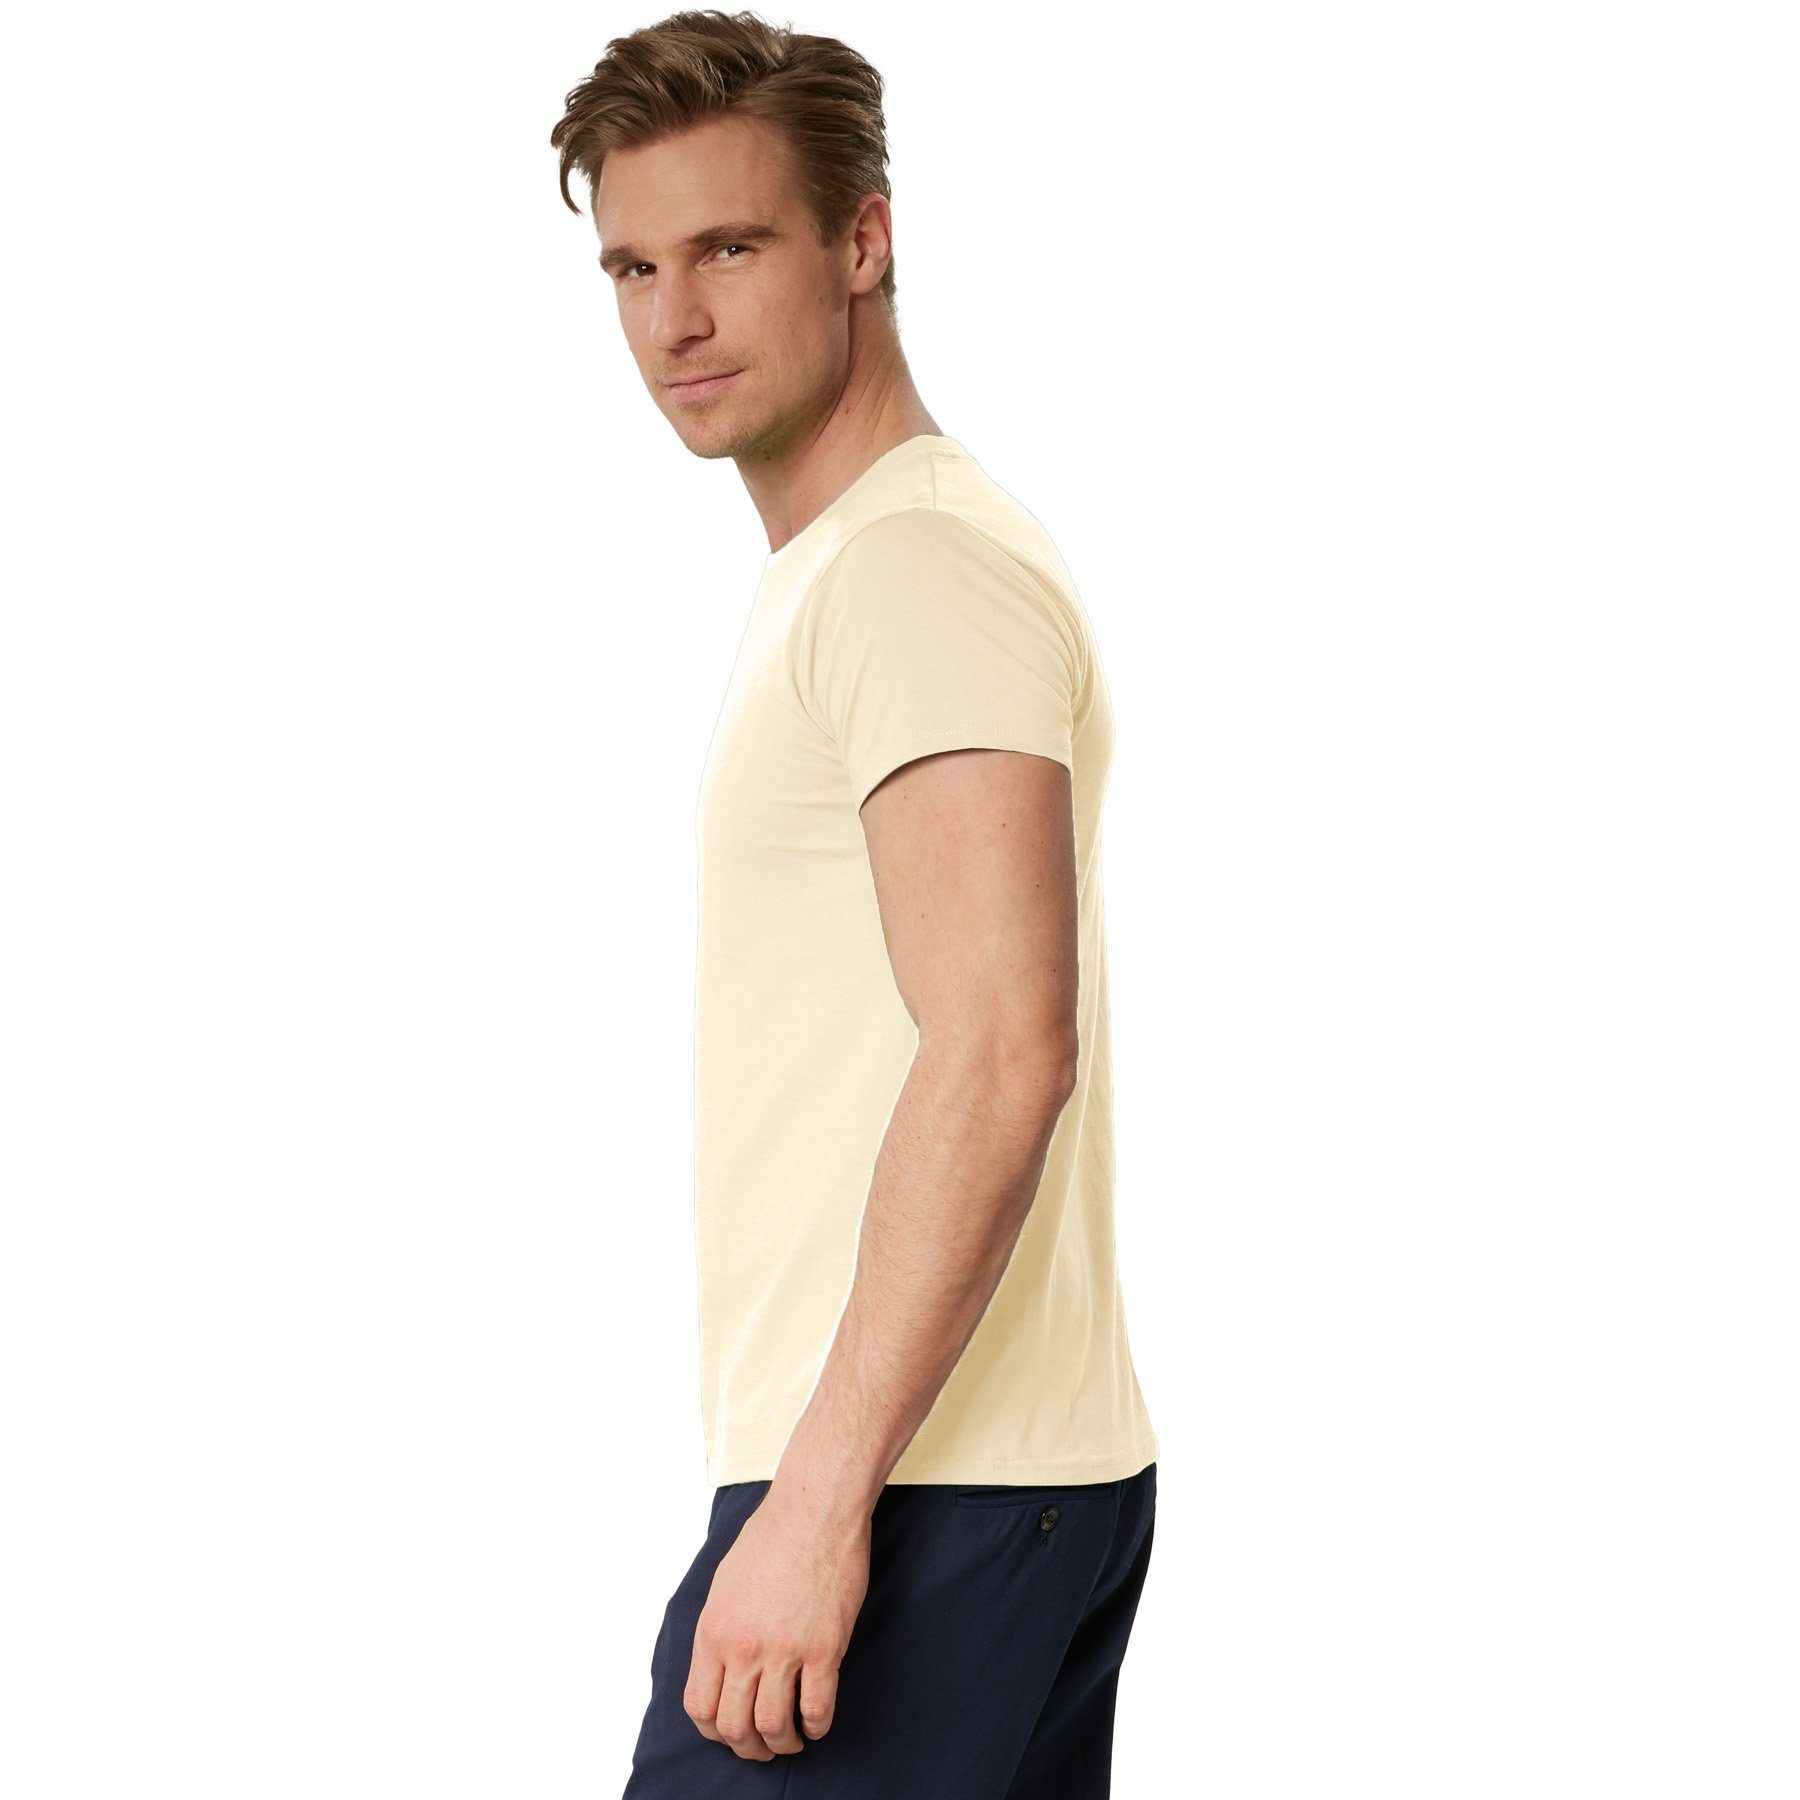 T-Shirt Rundhals beige Männer dressforfun T-Shirt